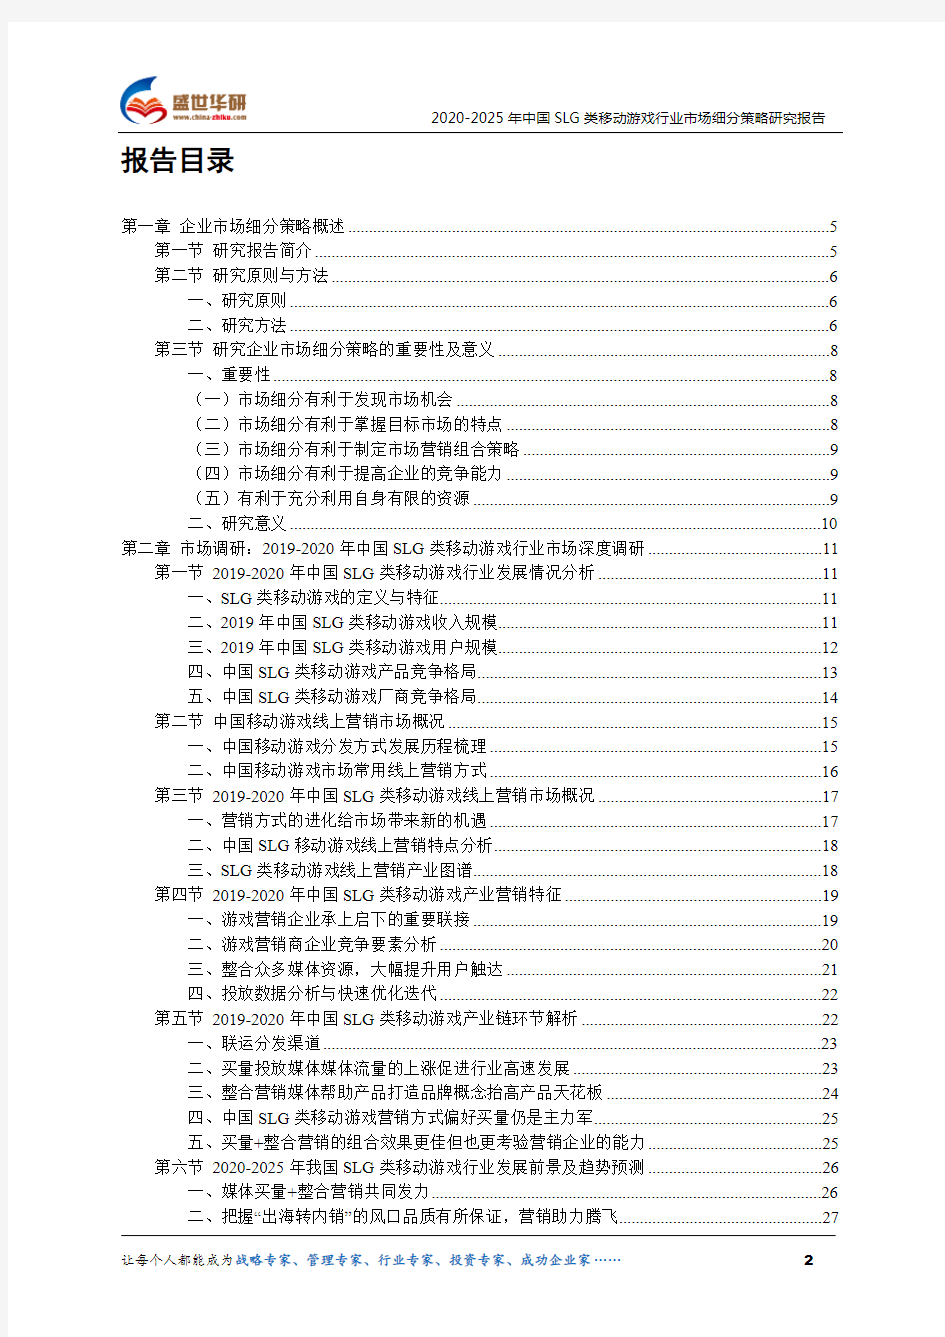 【完整版】2020-2025年中国SLG类移动游戏行业市场细分策略研究报告